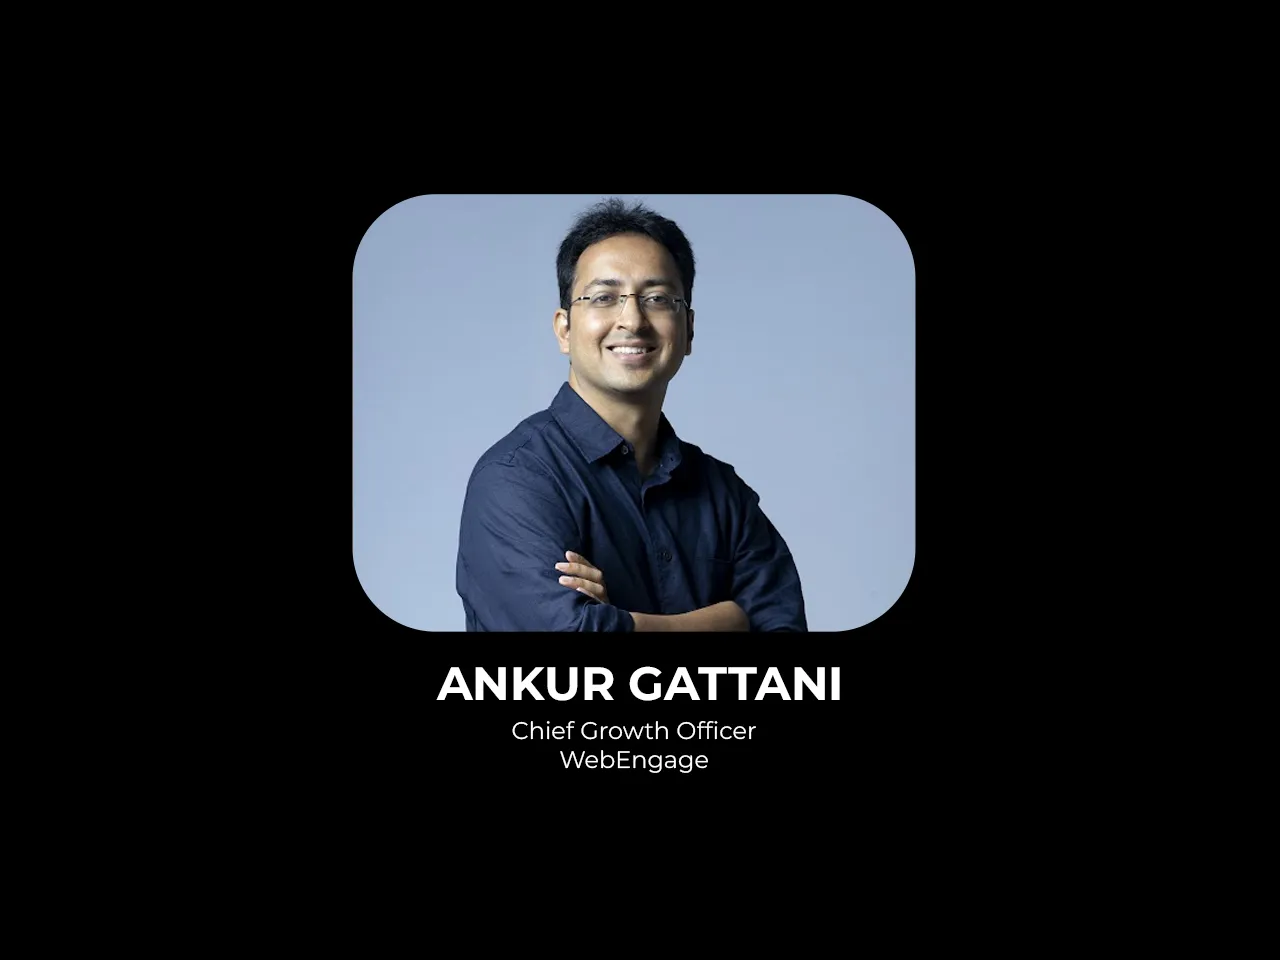  Ankur Gattani